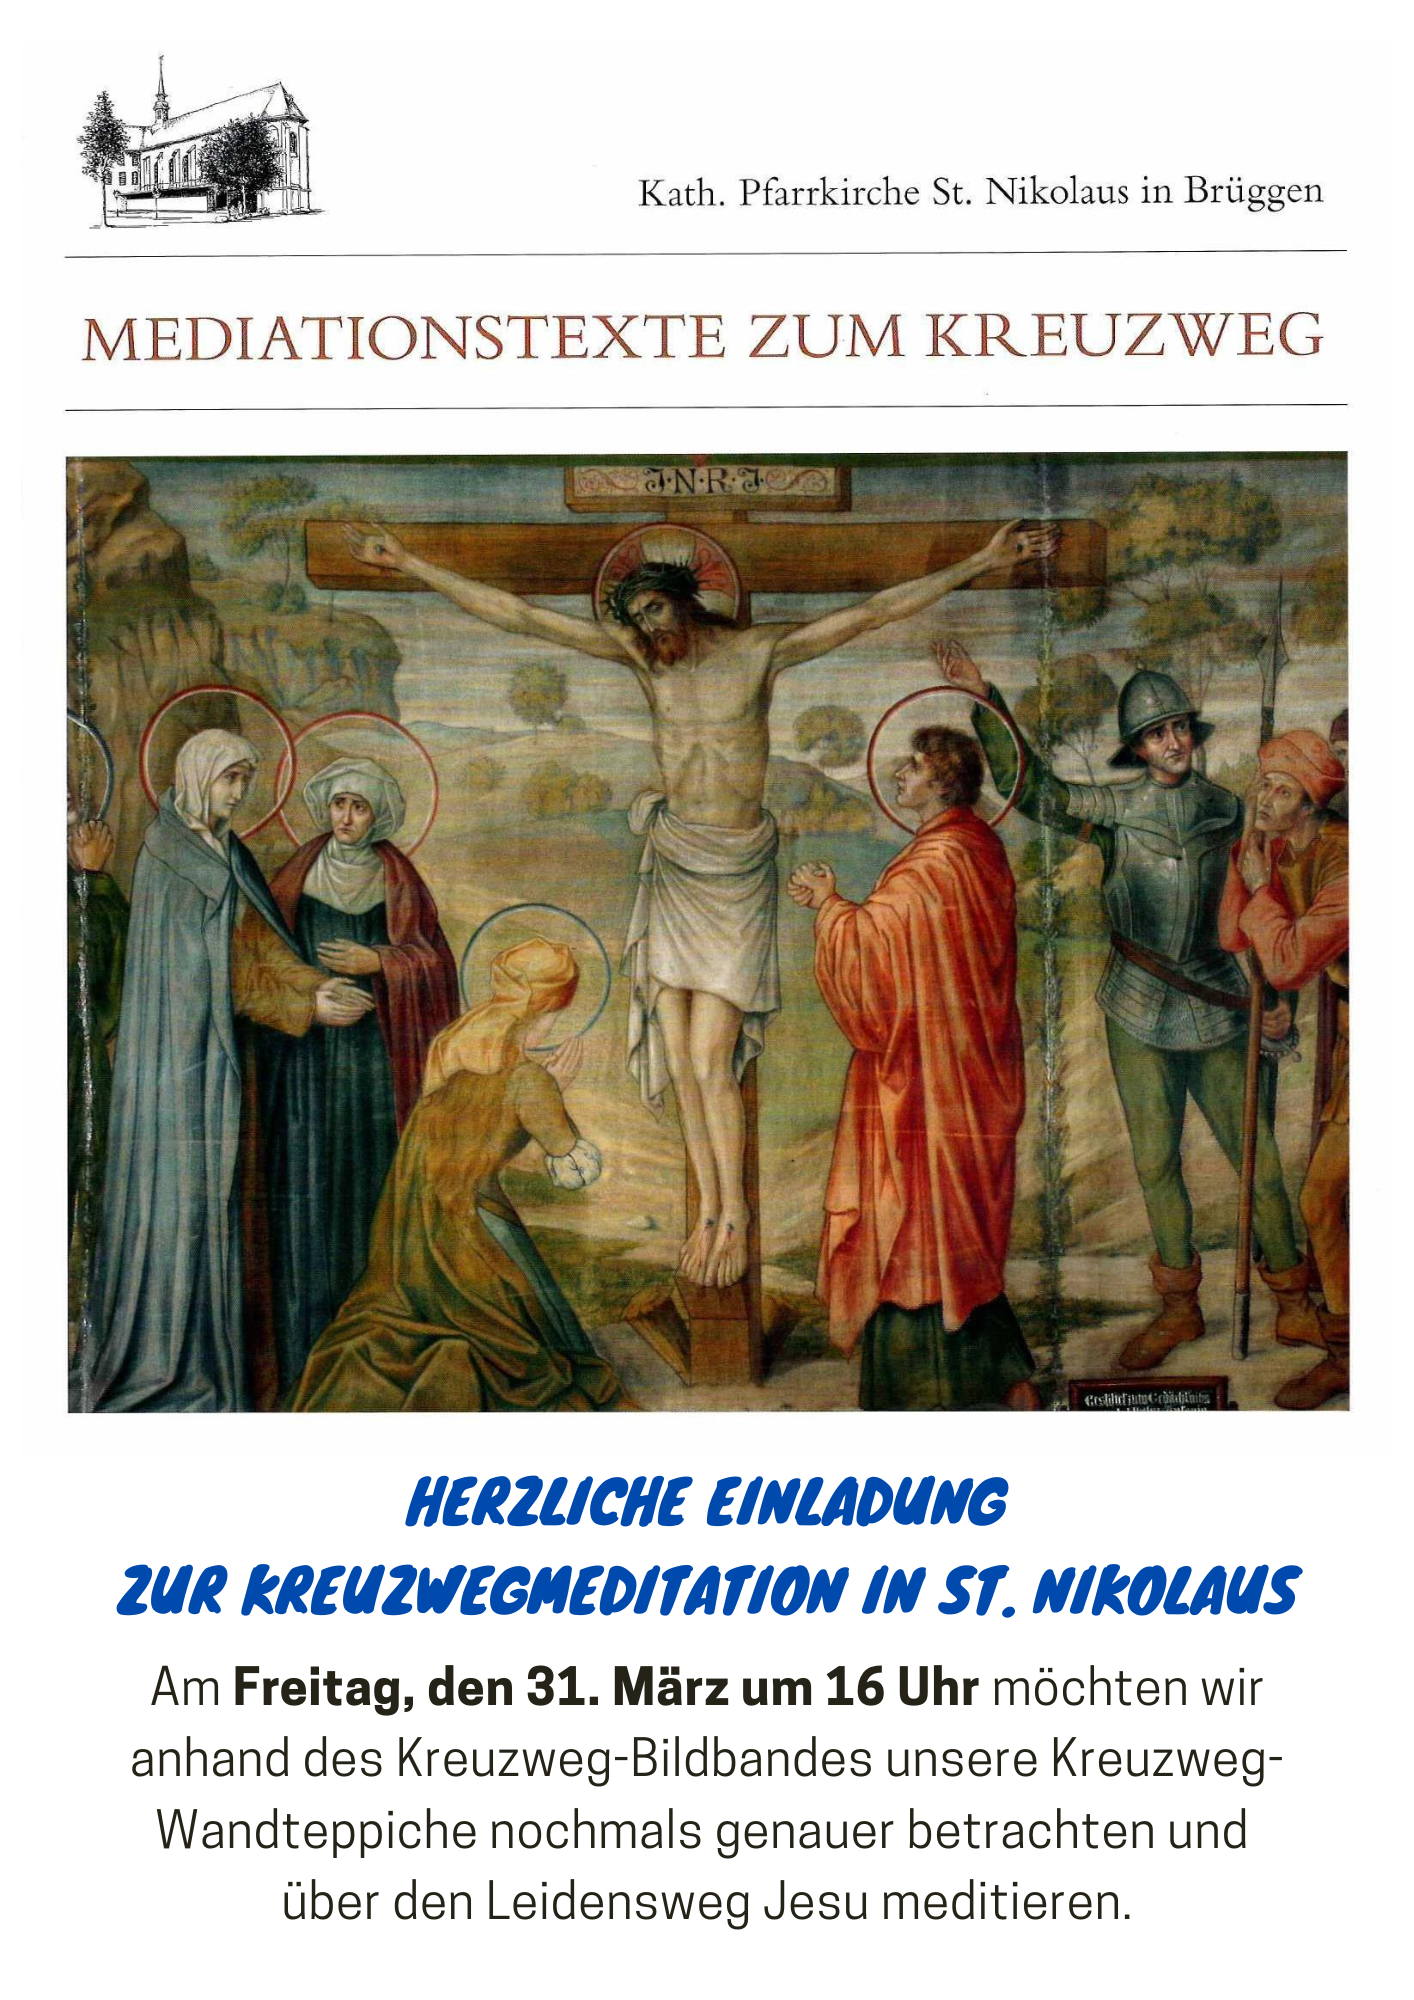 Kreuzwegmeditation in St. Nikolaus (c) Weggemeinschaft BBB